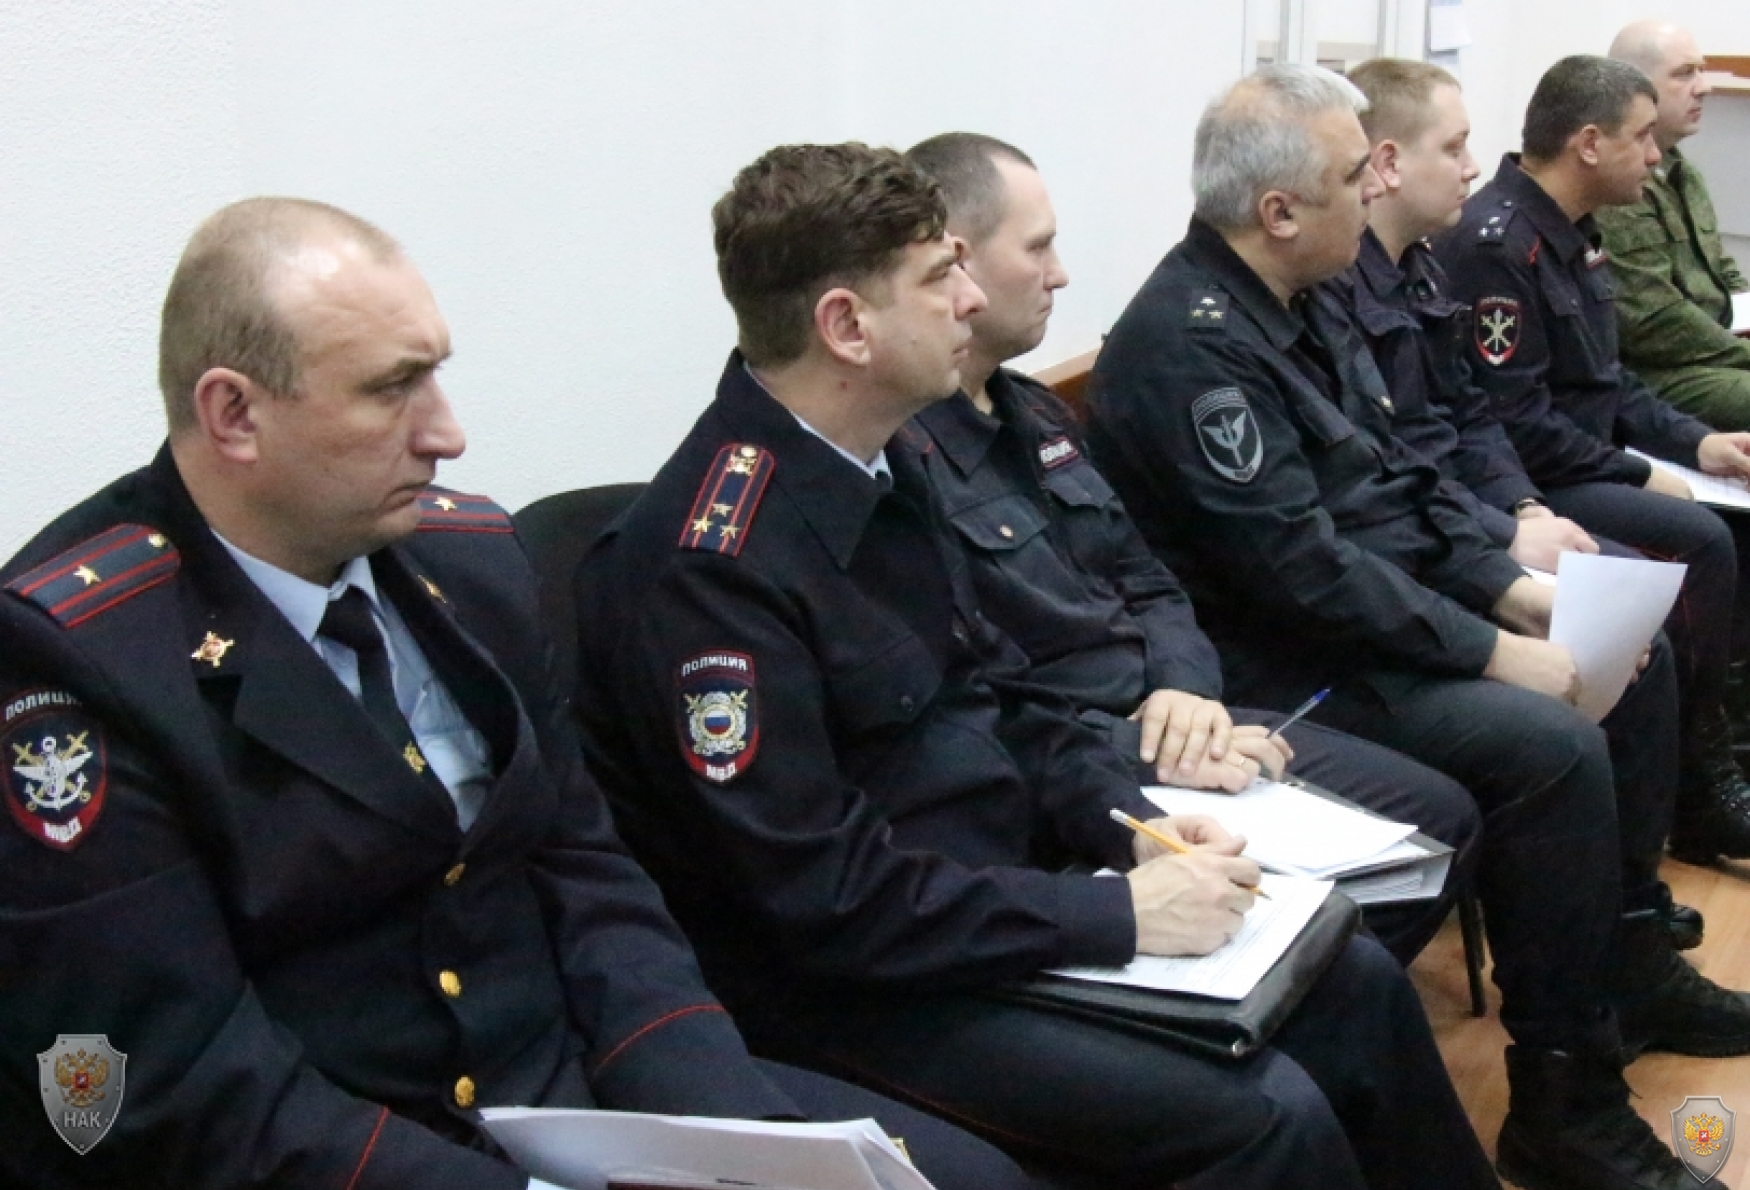 Оперативным штабом в Саратовской области проведены антитеррористические командно-штабные учения  на стадионе «Локомотив»